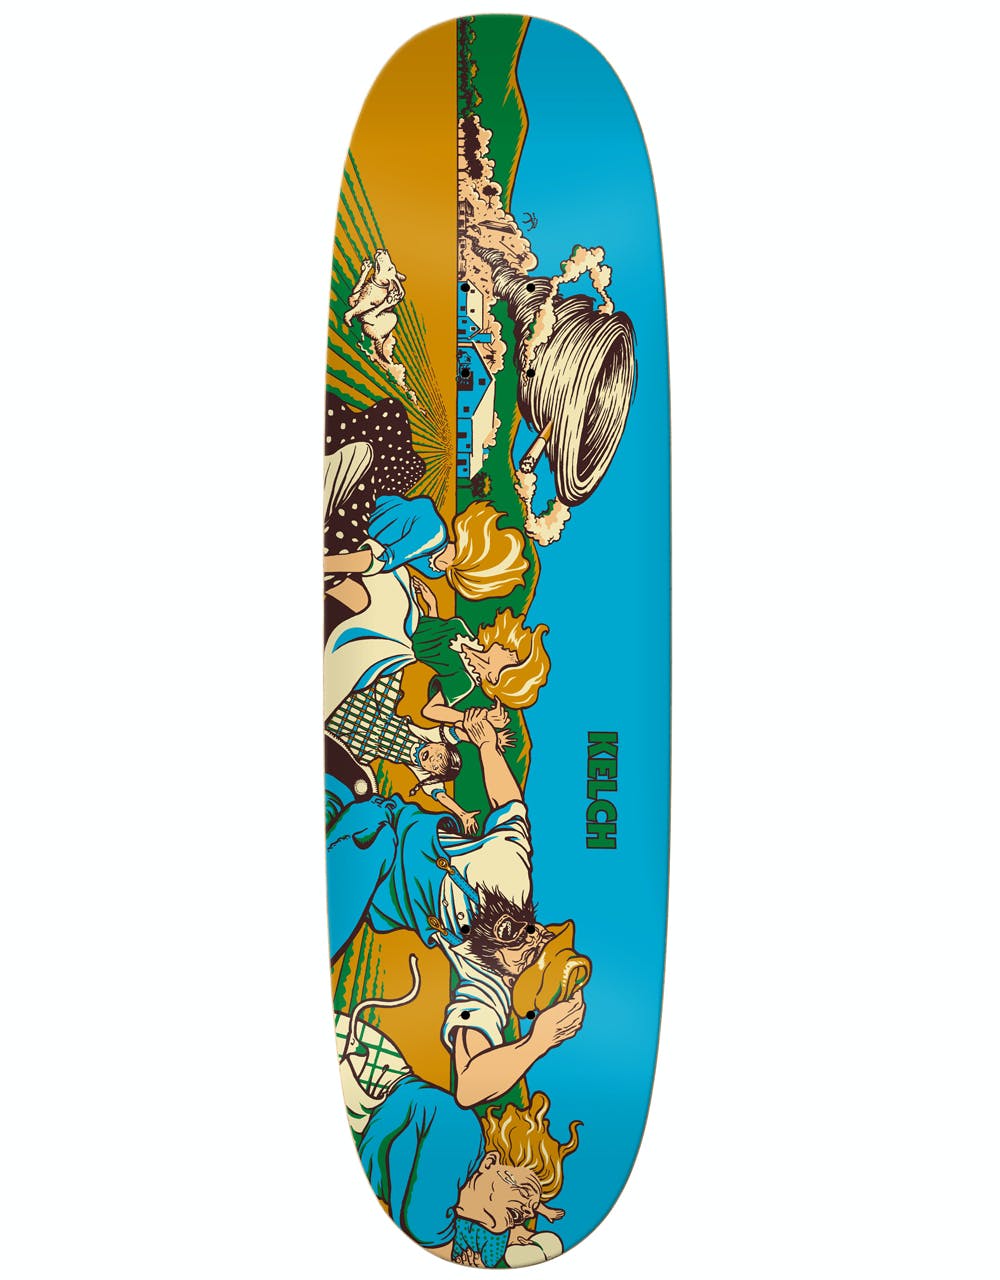 Real Kelch Twister Ltd Skateboard Deck - 8.75"